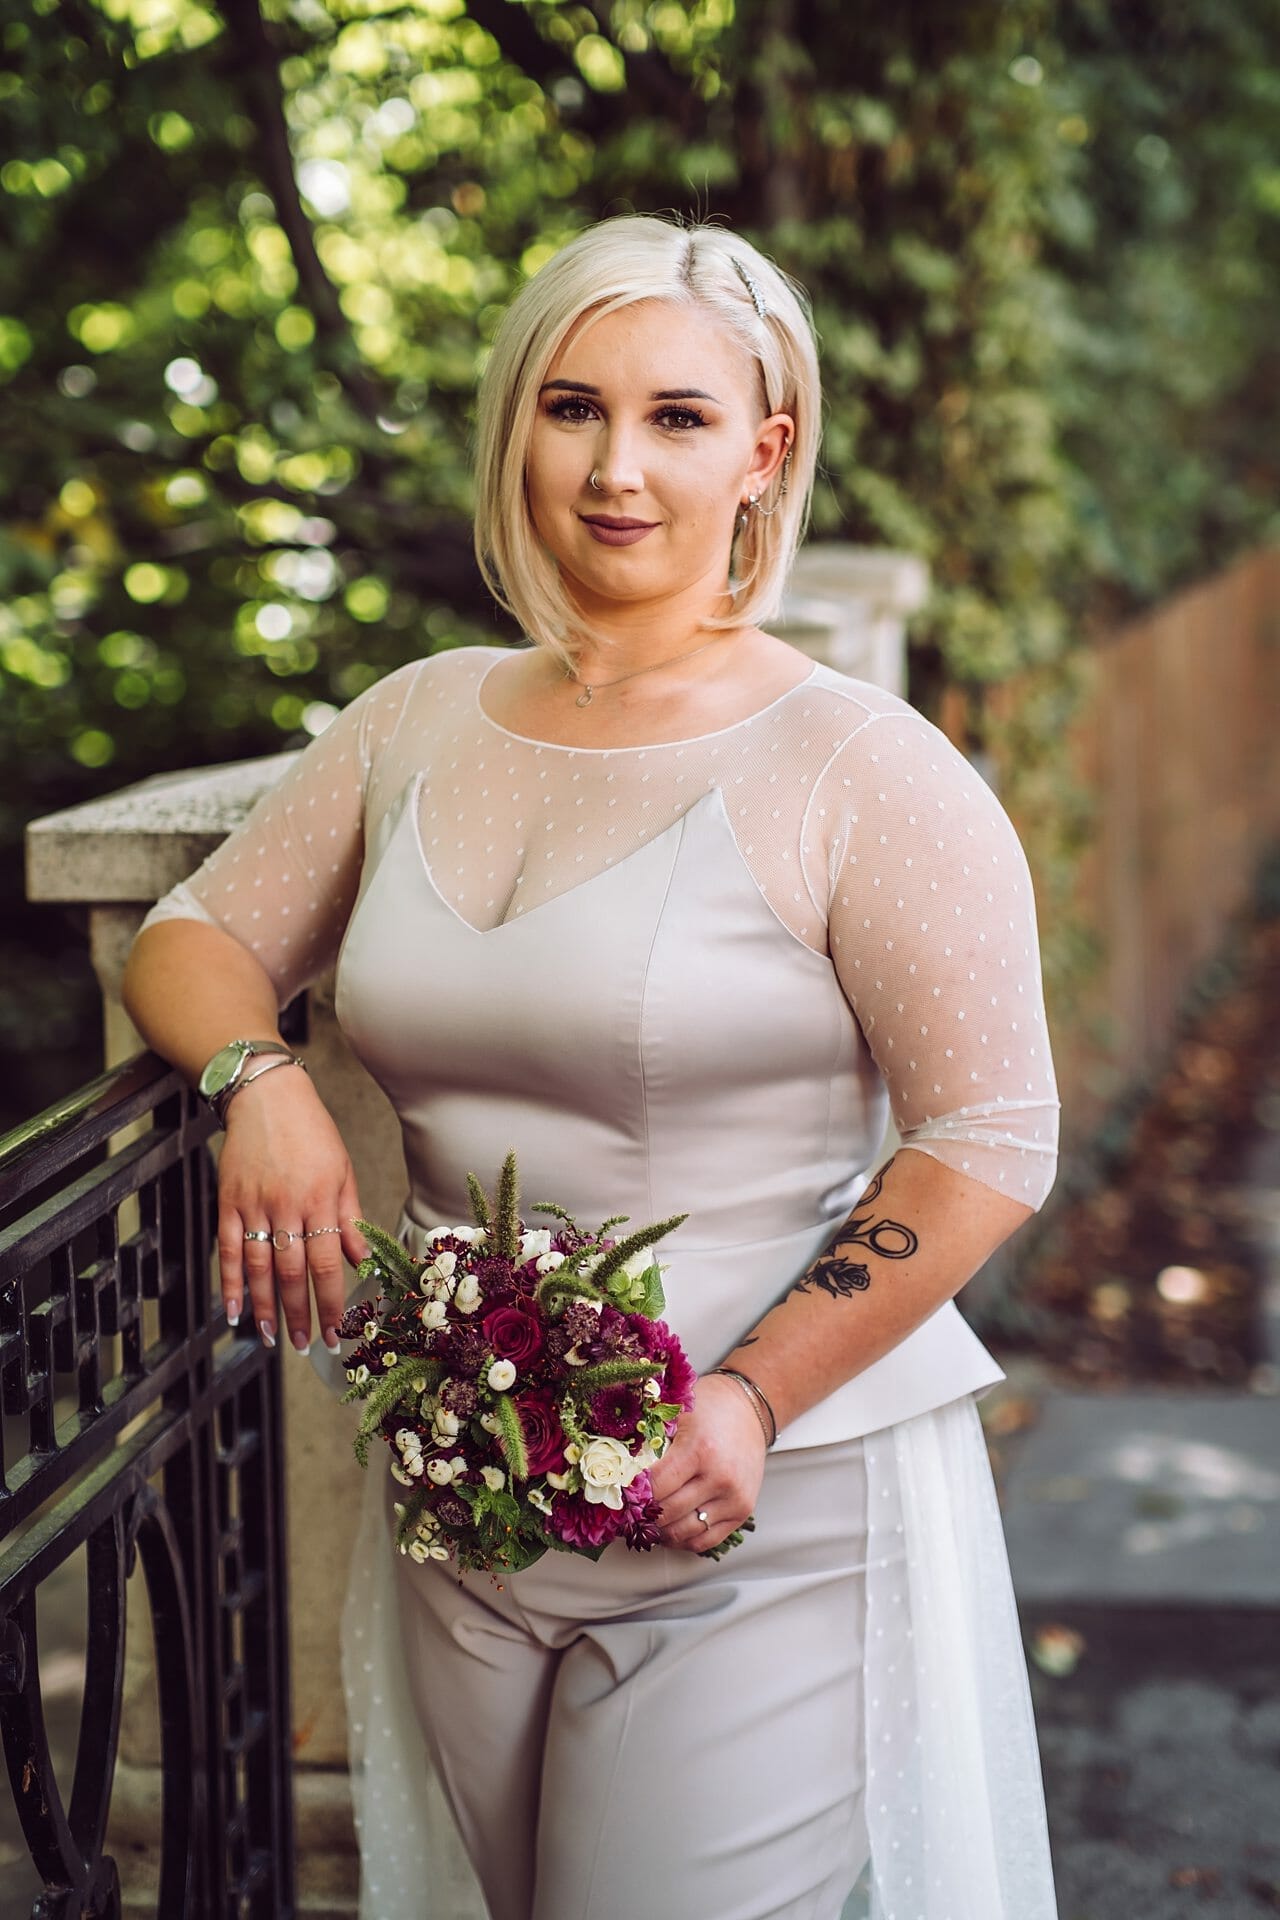 Eine blonde Frau in einem Hochzeitskleid posiert für ein Foto.